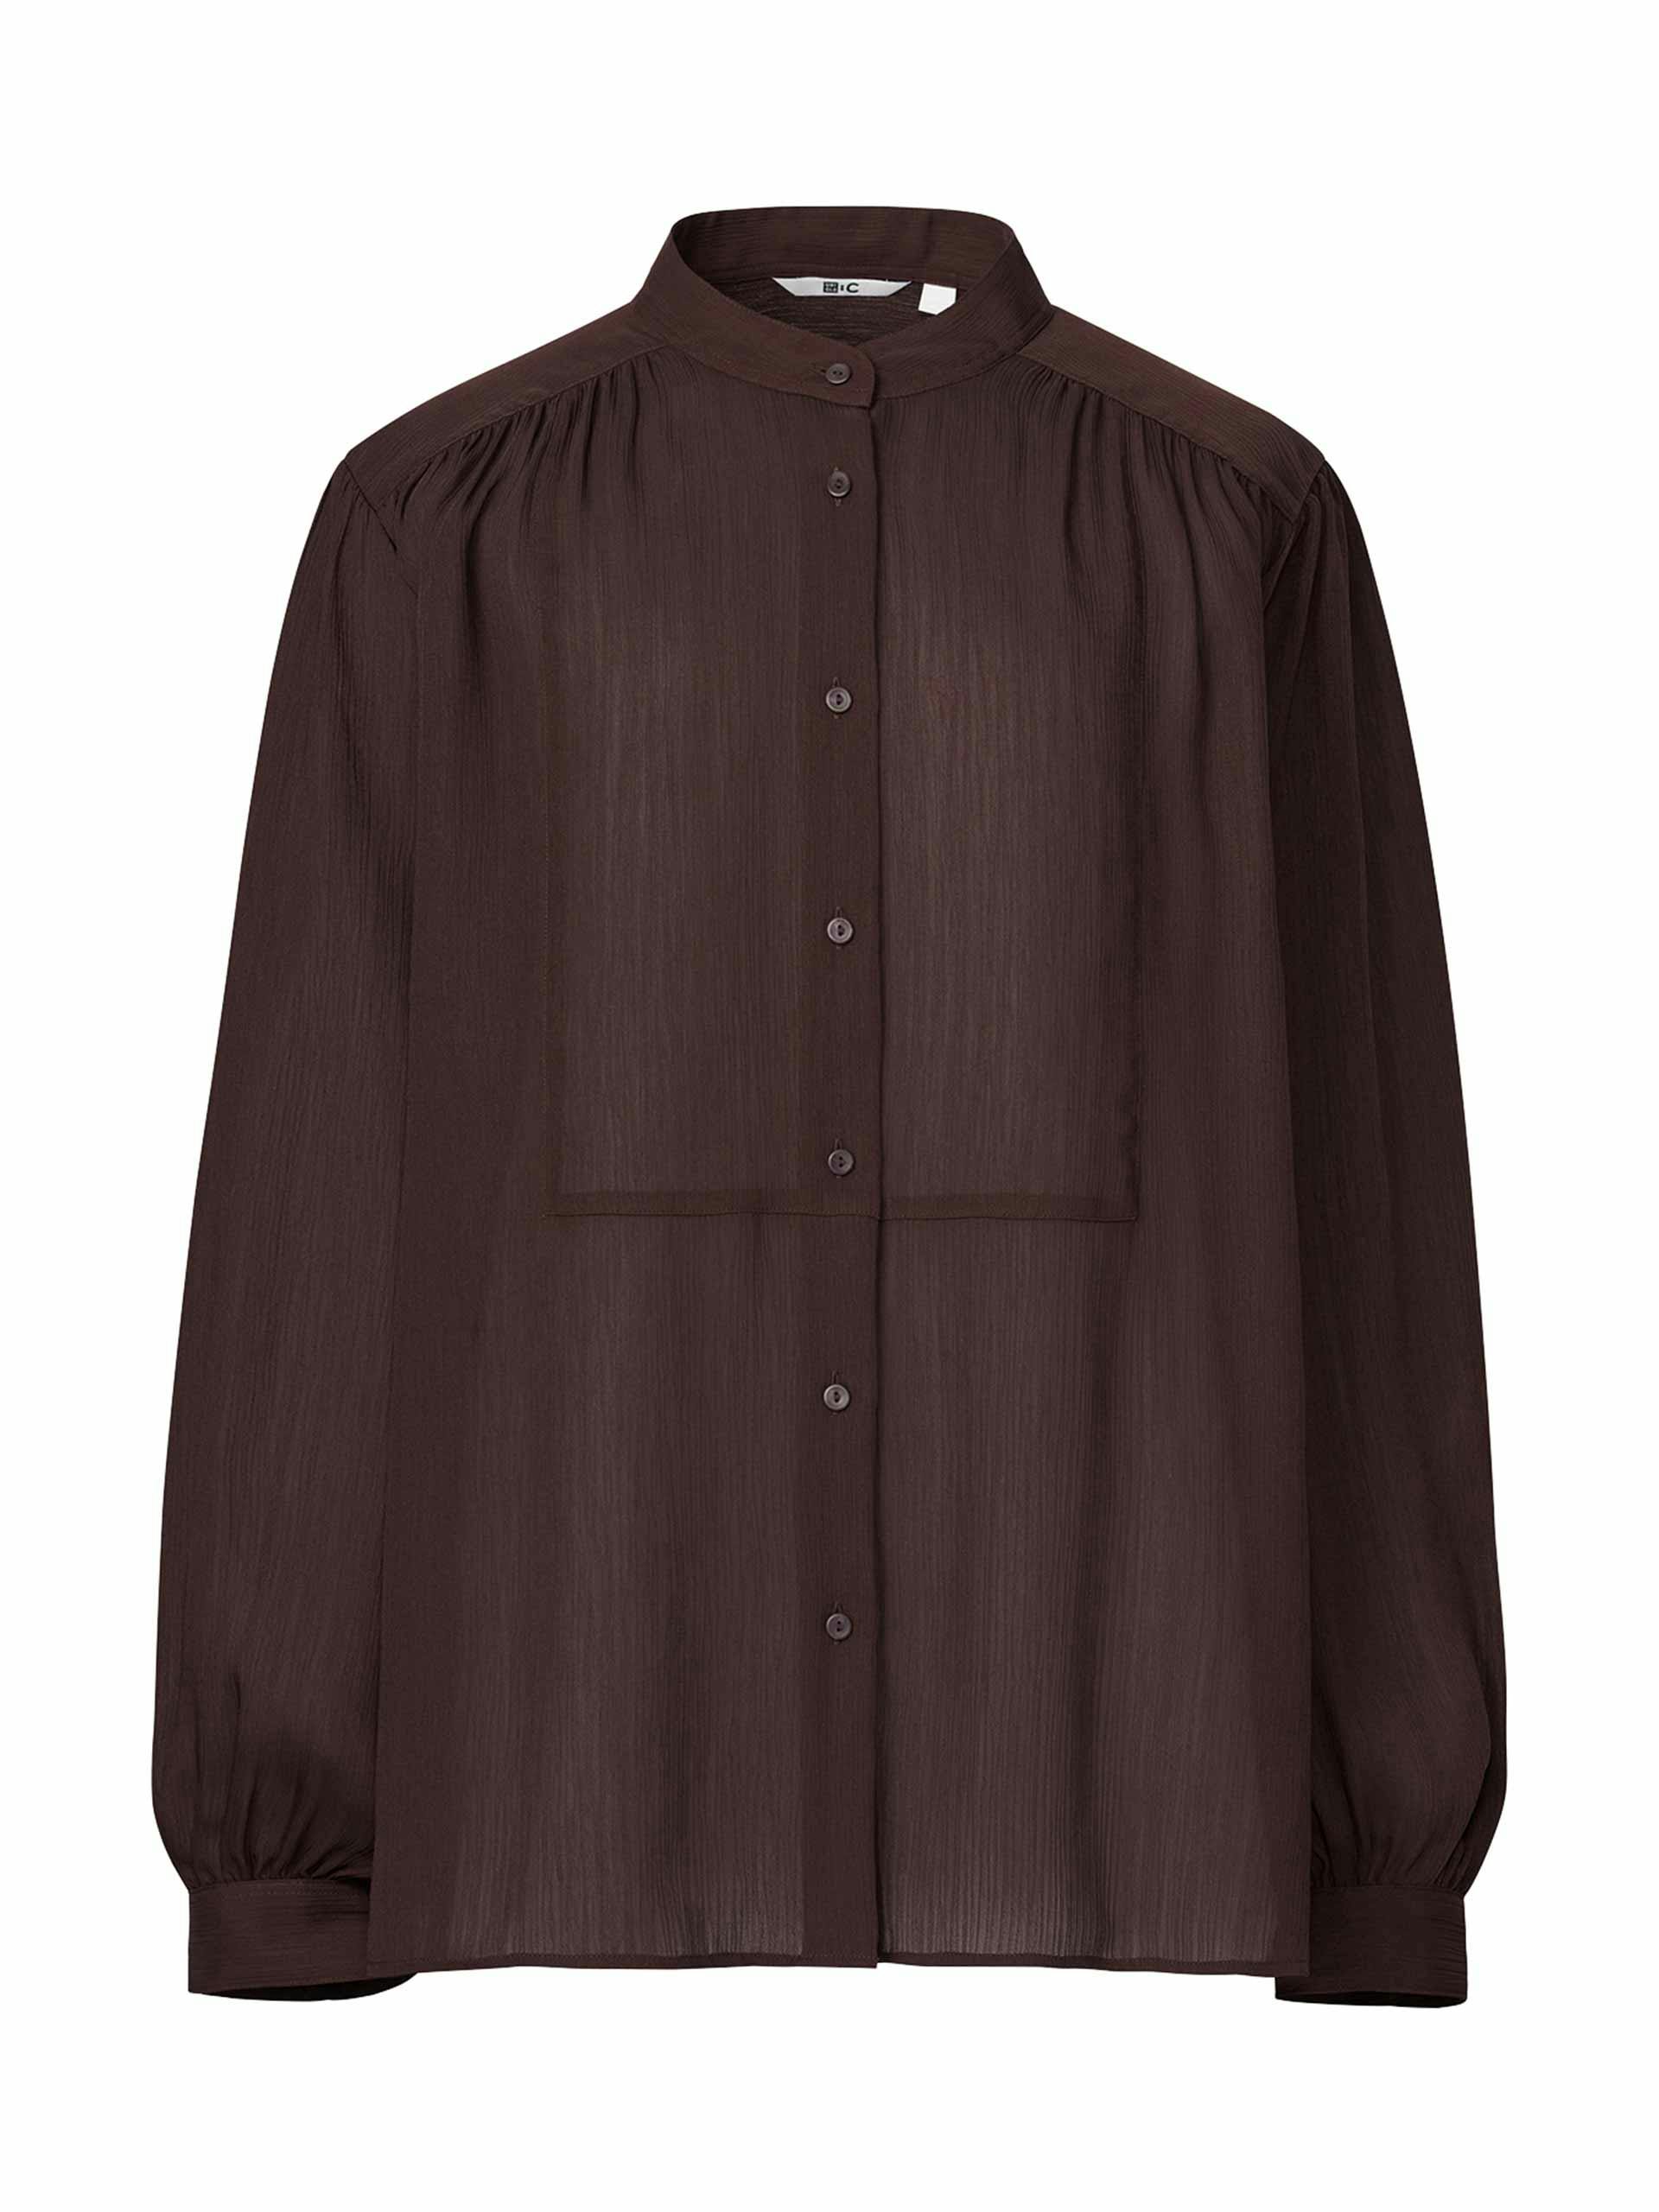 Dark brown voluminous blouse